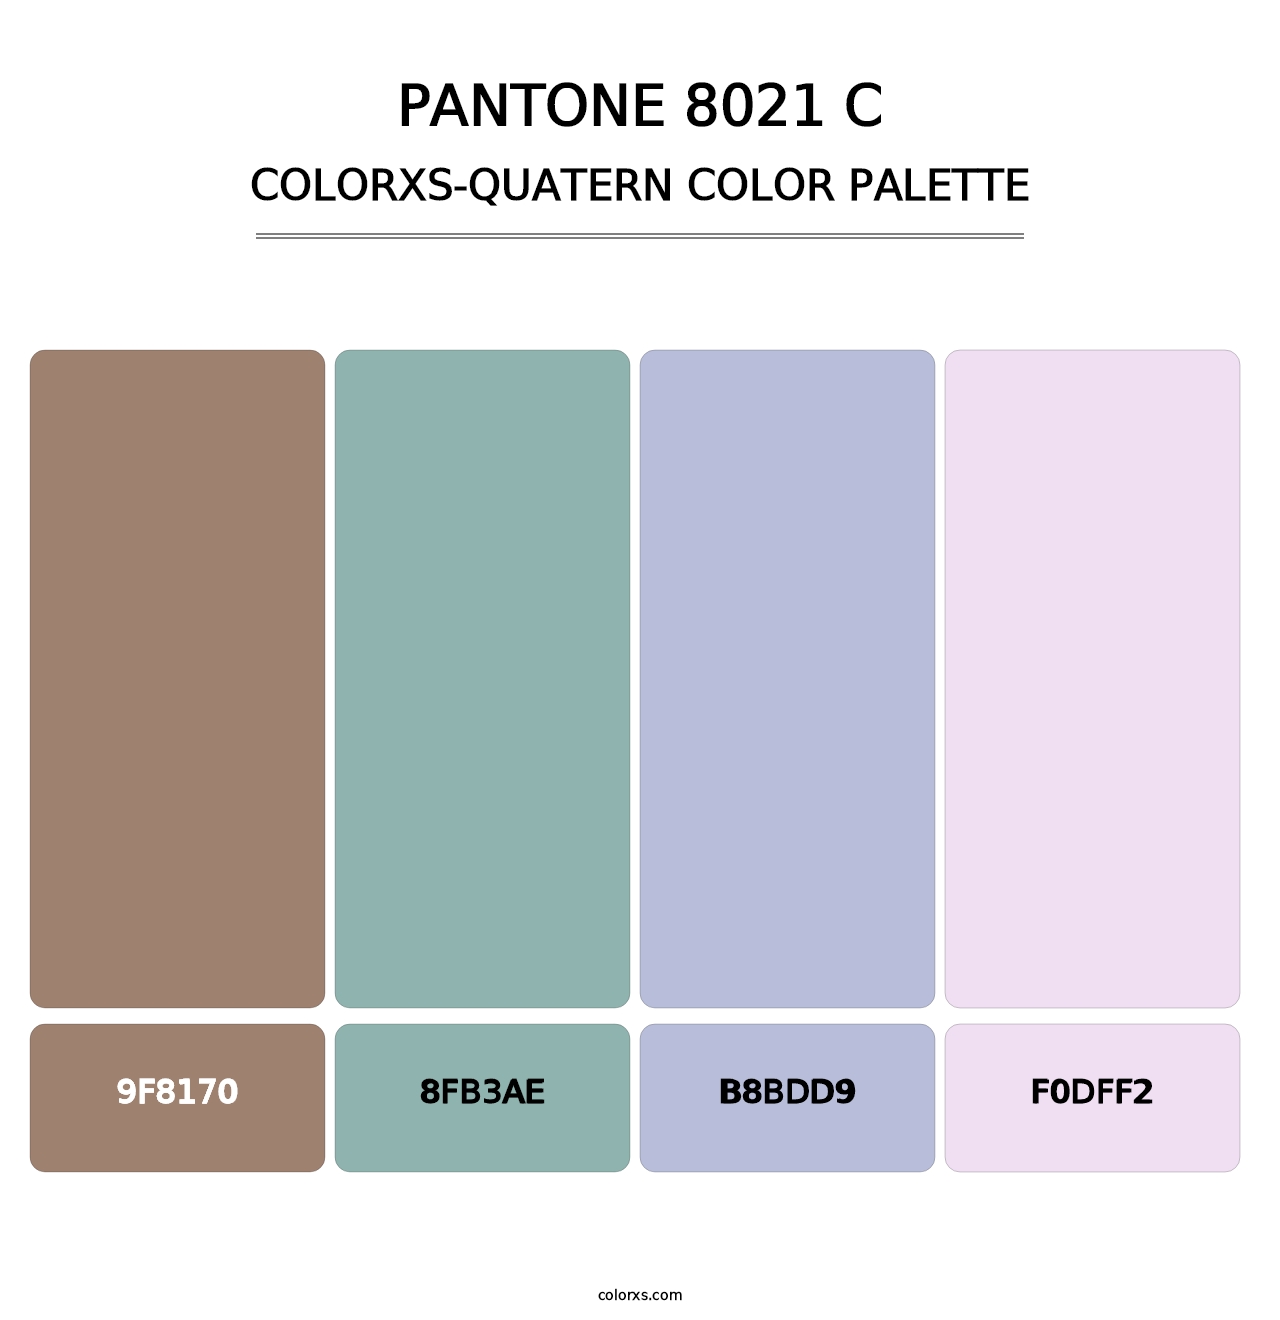 PANTONE 8021 C - Colorxs Quatern Palette